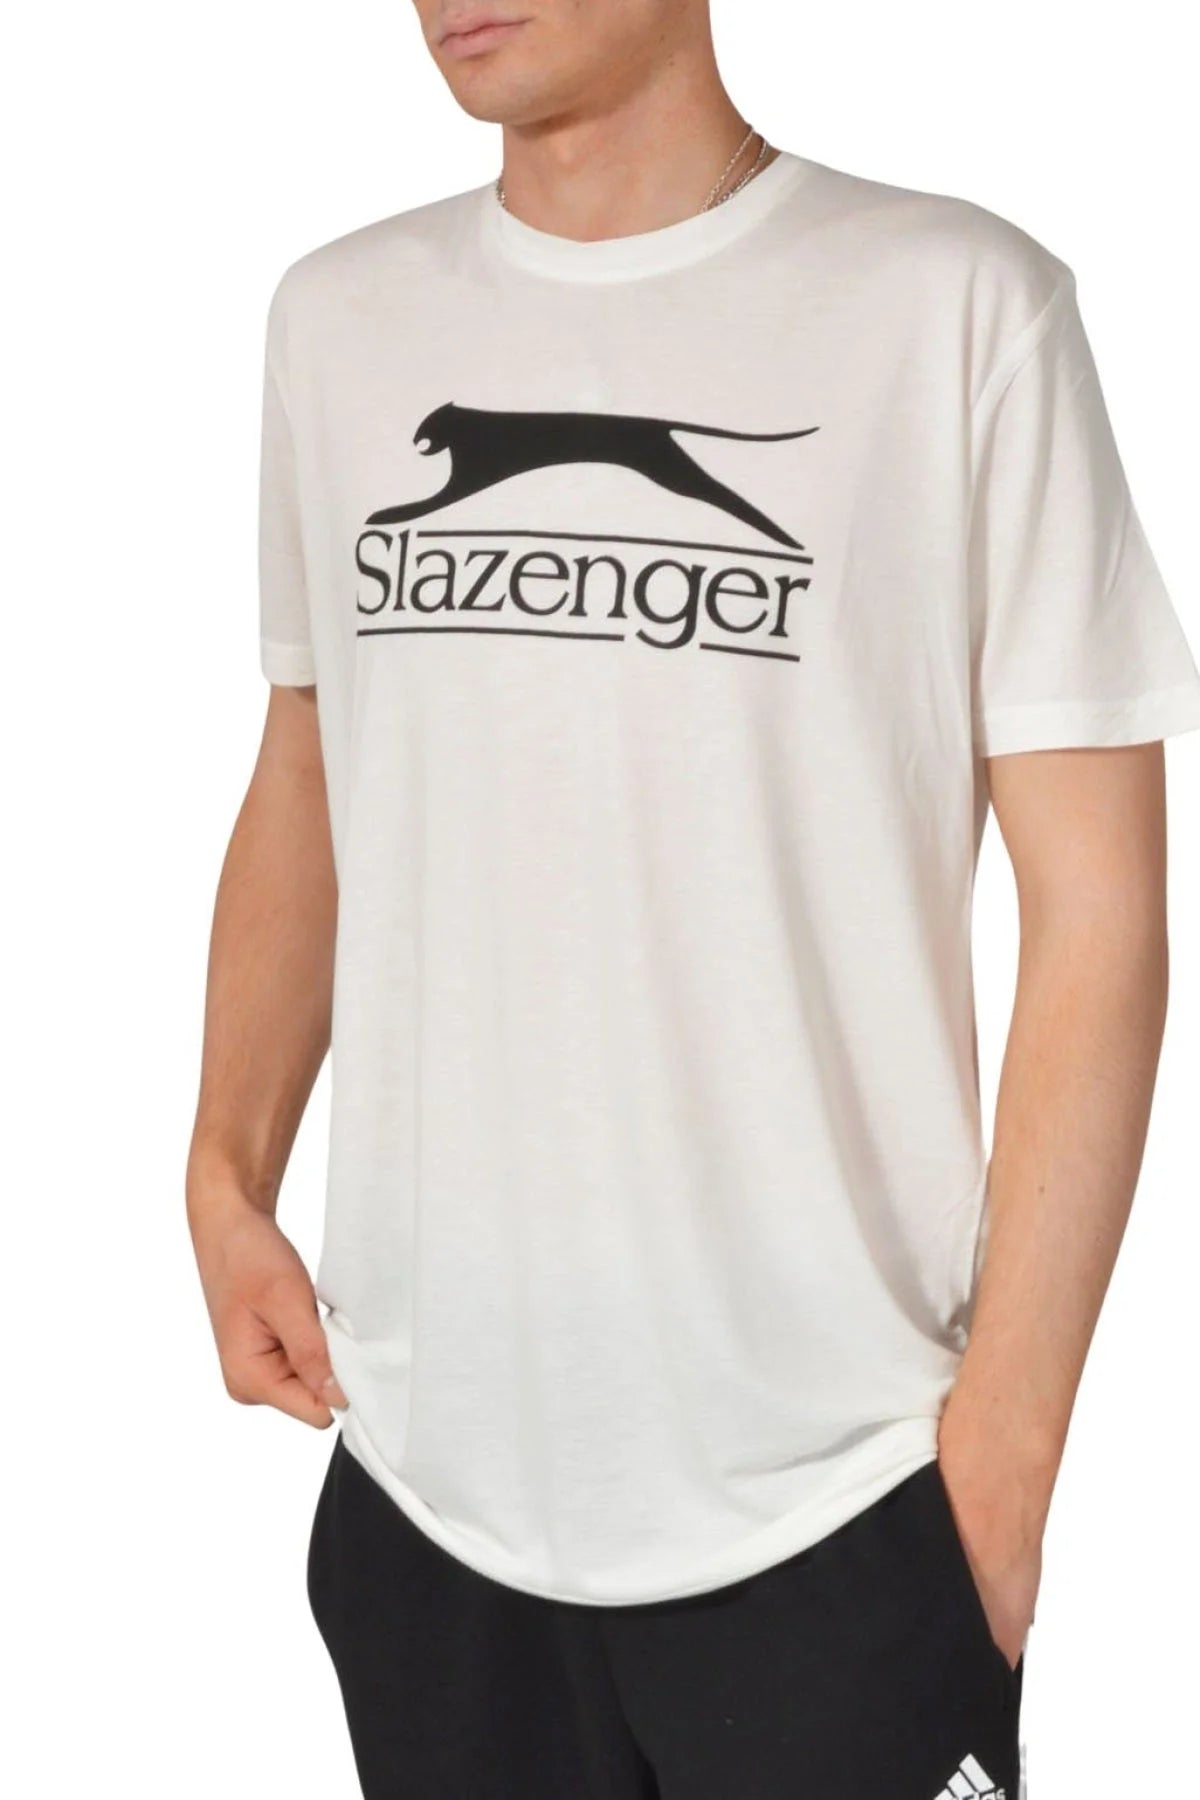 Slazenger Vintage Style Cat Logo T-Shirt White / S